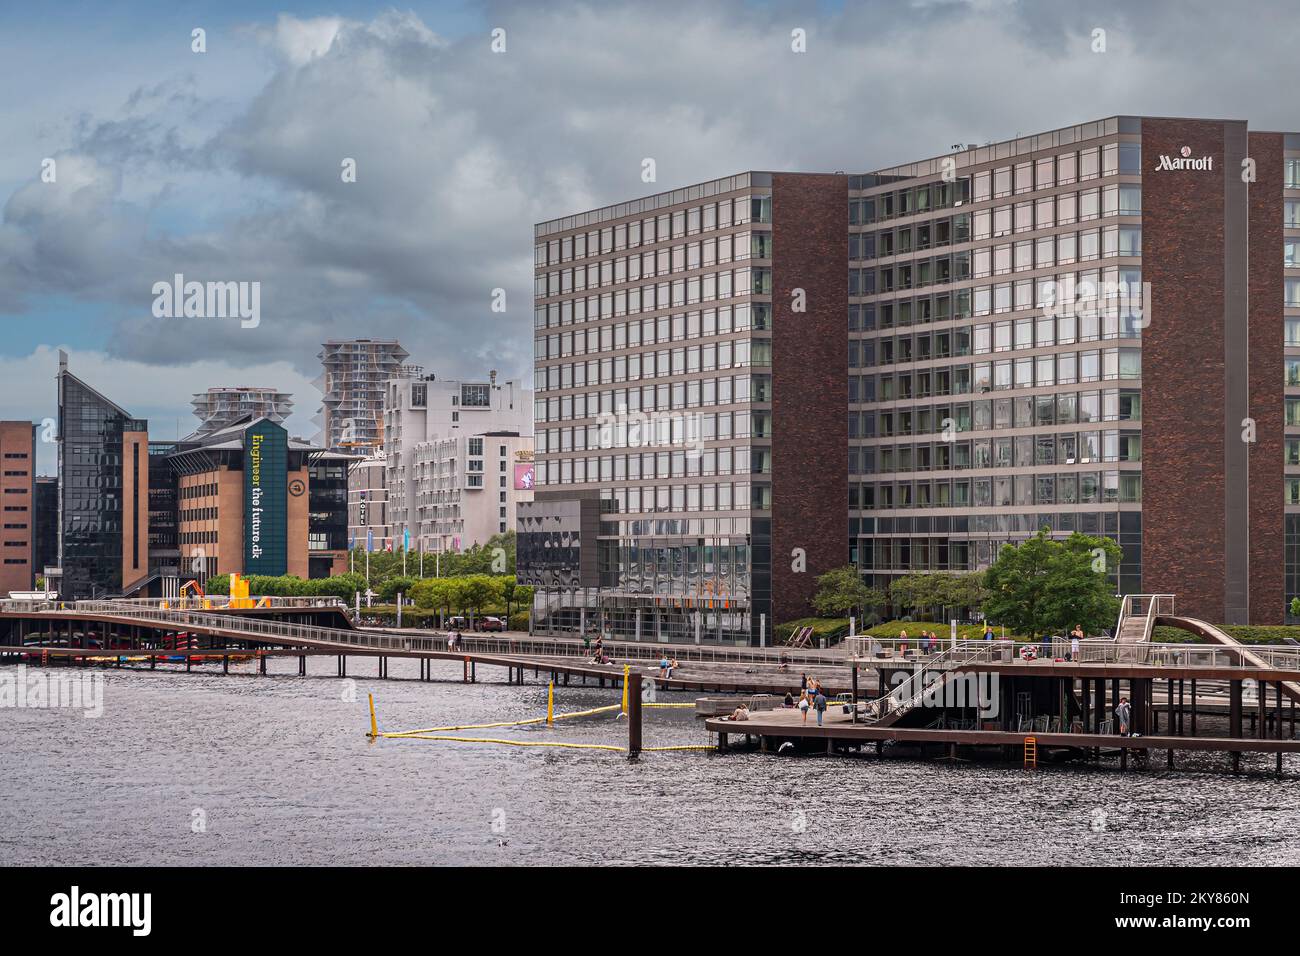 Copenhague, Danemark - 24 juillet 2022: Vue sud-ouest le long du quai de Kalvebod de Sydhavnen depuis le pont de Langebro montre de grands bâtiments, au-dessus de la passerelle d'eau avec la nage Banque D'Images